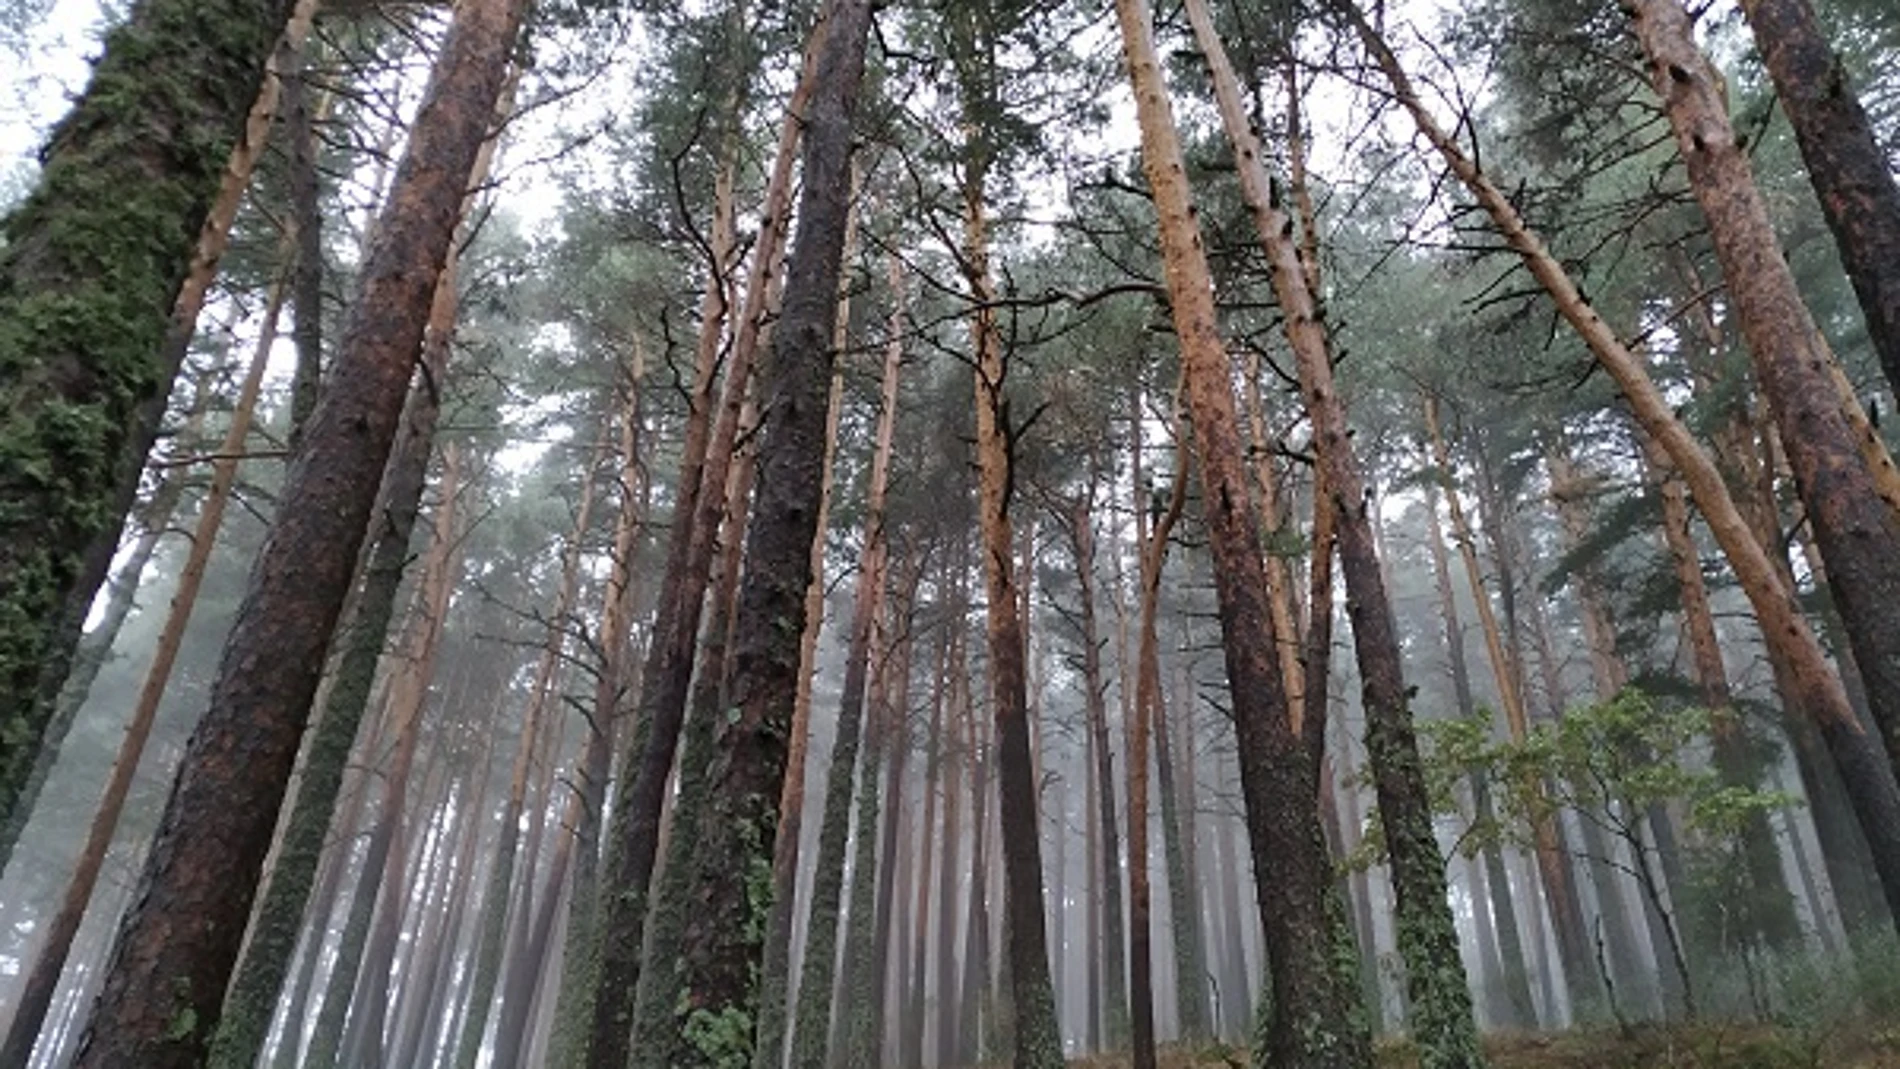 La investigación tuvo como objeto de estudio tres especies de pino de Castilla y León